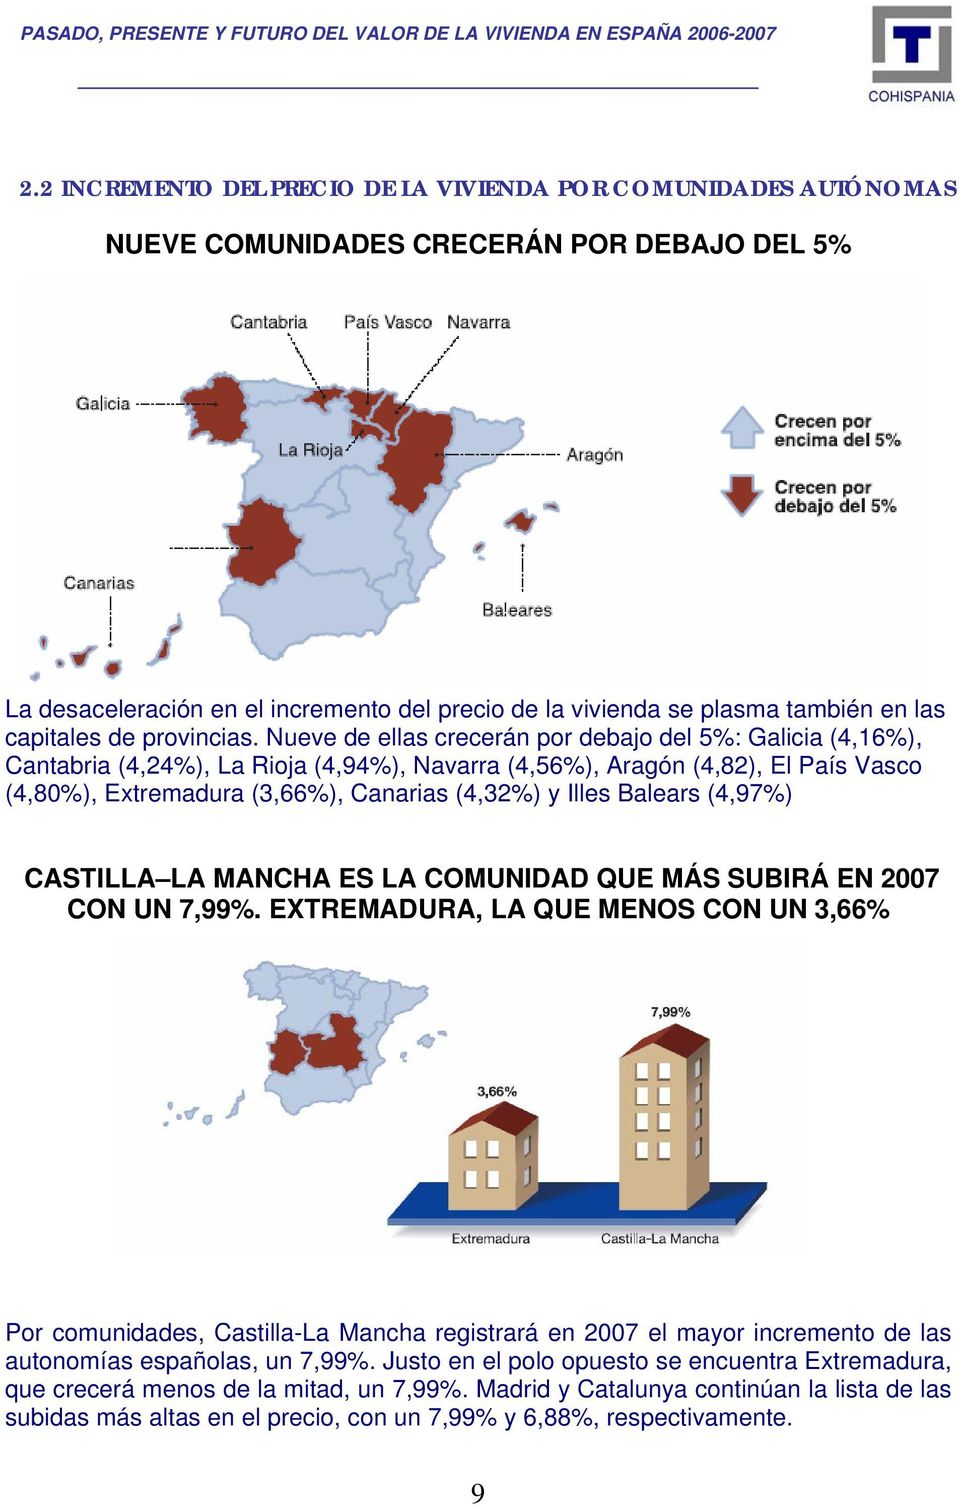 Nueve de ellas crecerán por debajo del 5%: Galicia (4,16%), Cantabria (4,24%), La Rioja (4,94%), Navarra (4,56%), Aragón (4,82), El País Vasco (4,80%), Extremadura (3,66%), Canarias (4,32%) y Illes